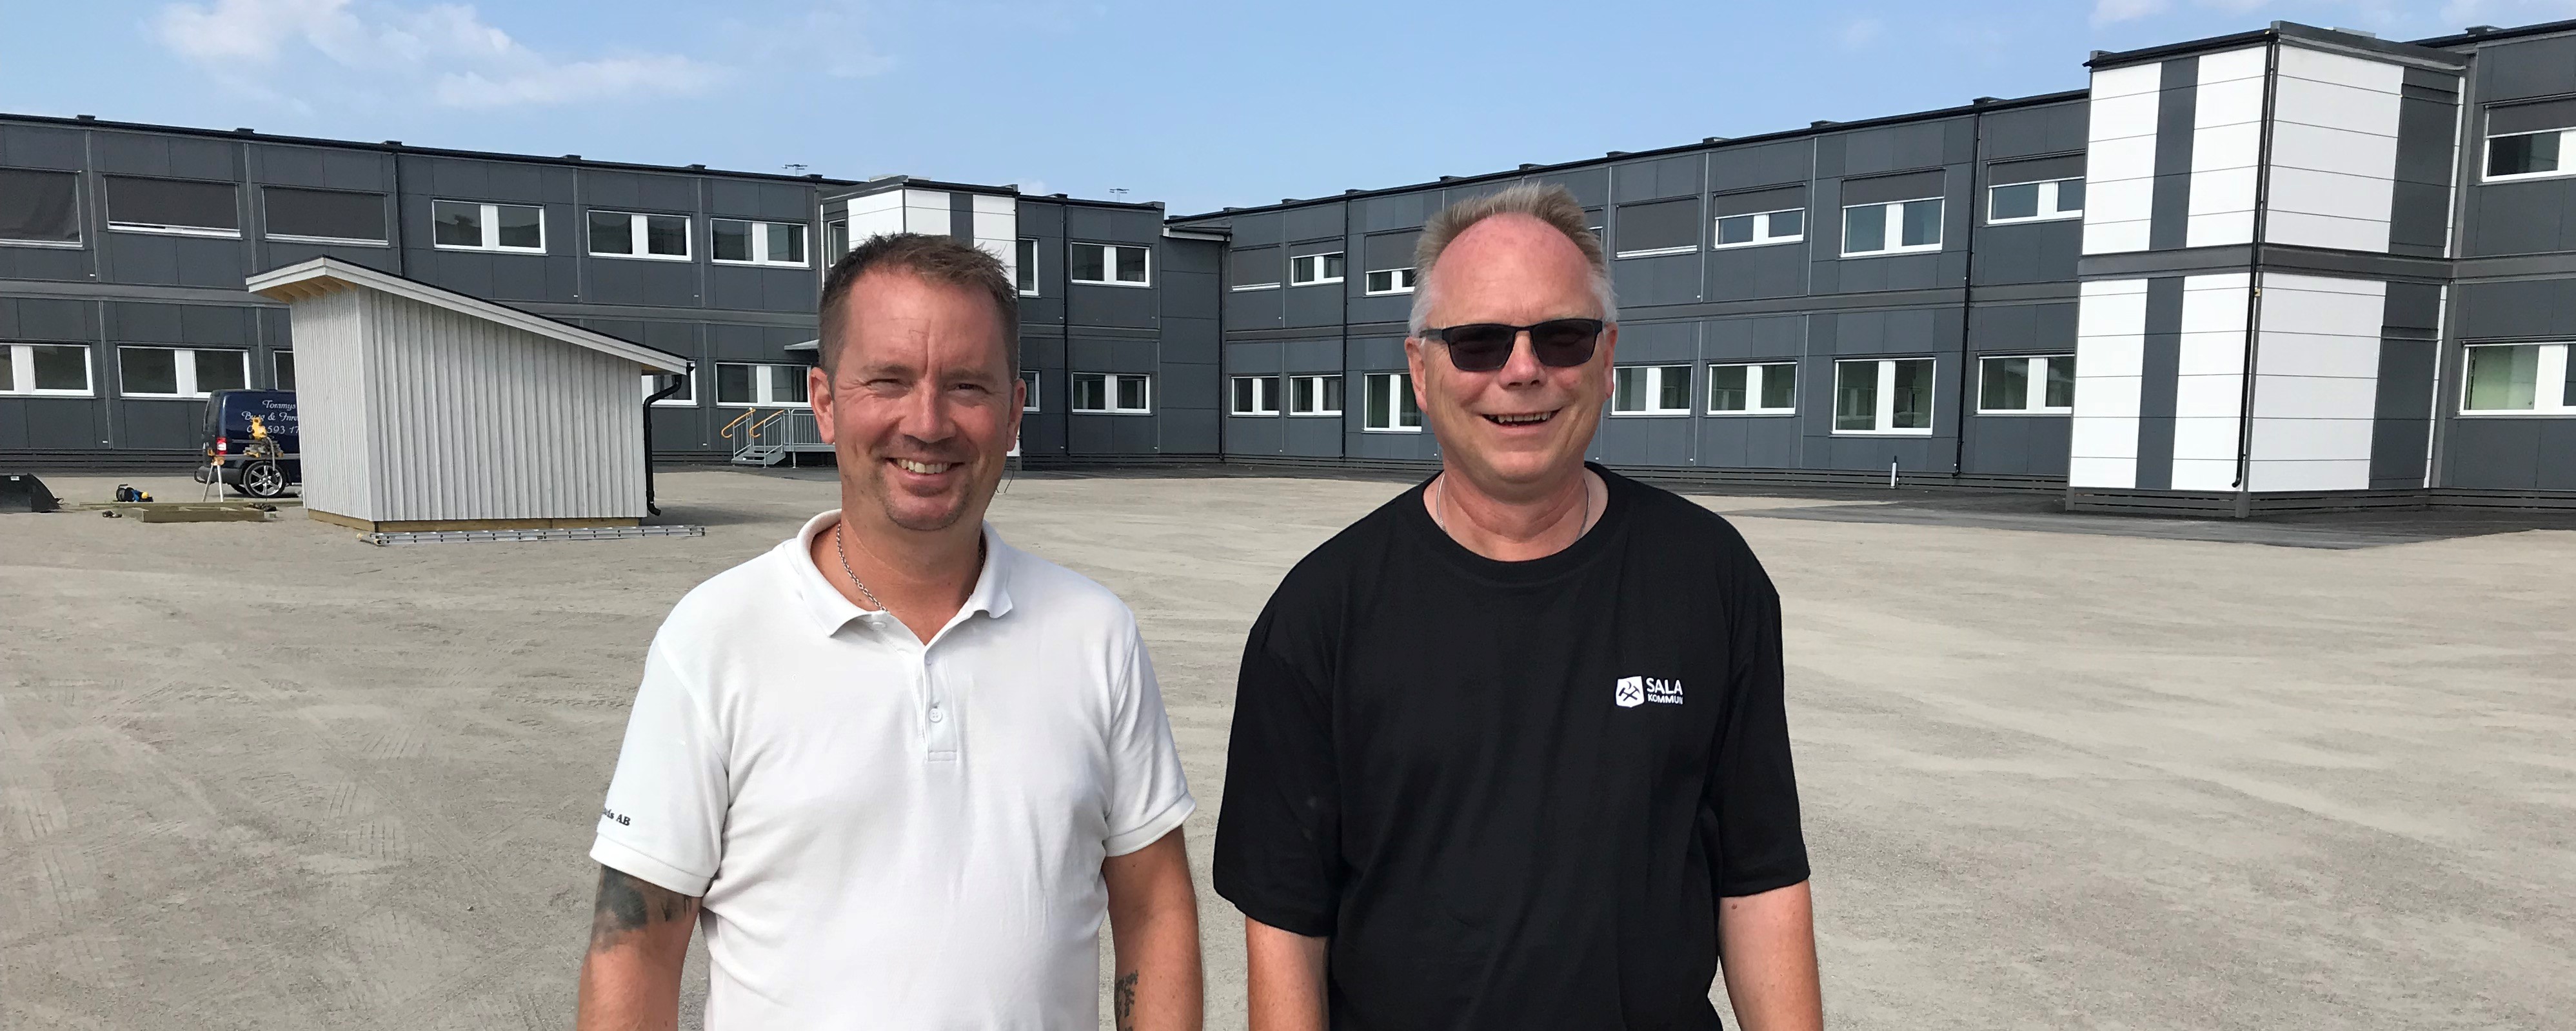 Byggaren Mattias Kvist och Sala kommuns projektledare Hans Andersson har hållit ihop trådarna kring den nya modulskolan.